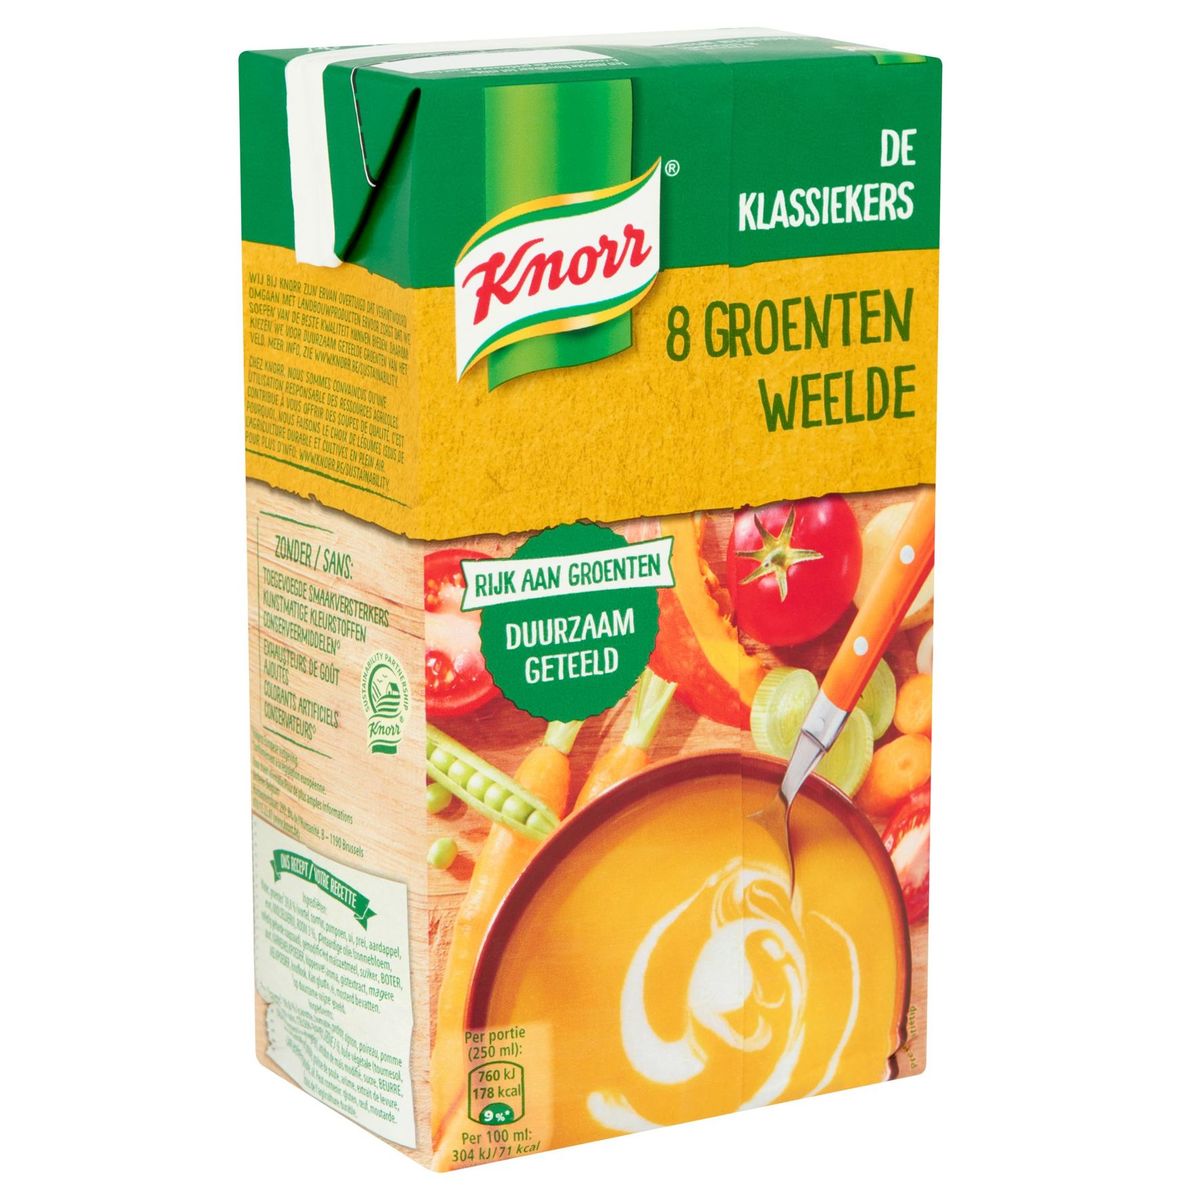 Knorr Classics Tetra Soupe Douceur de 8 Légumes 1 L